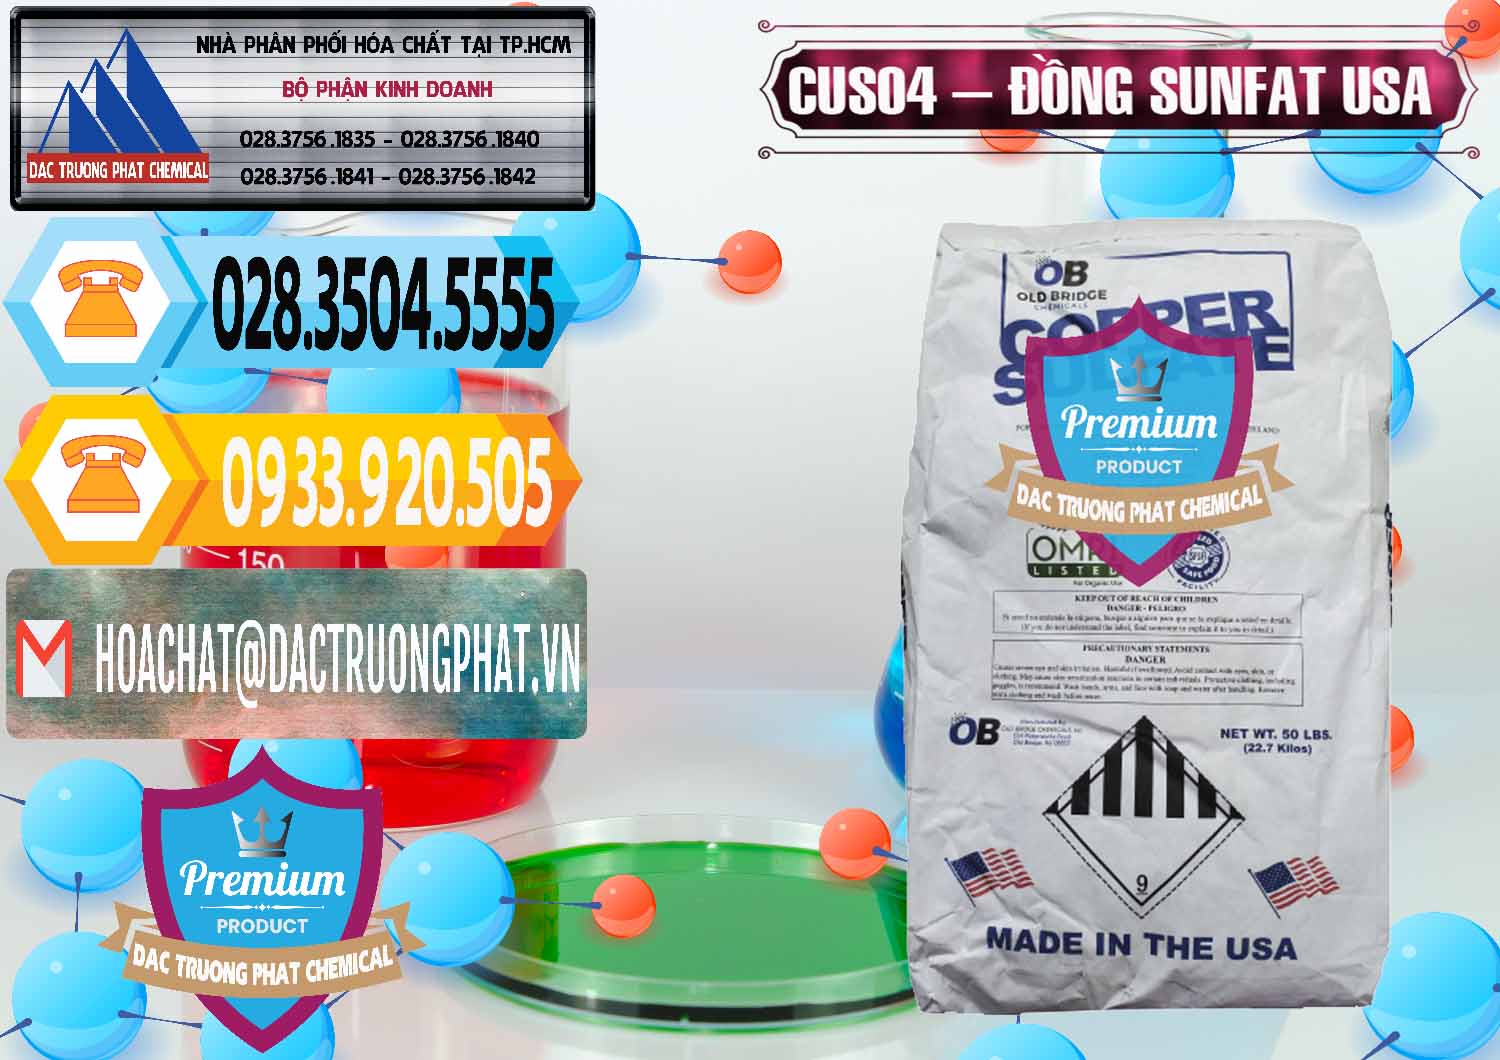 Nơi chuyên cung ứng ( bán ) CuSO4 – Đồng Sunfat Mỹ USA - 0479 - Cty chuyên cung cấp & nhập khẩu hóa chất tại TP.HCM - hoachattayrua.net